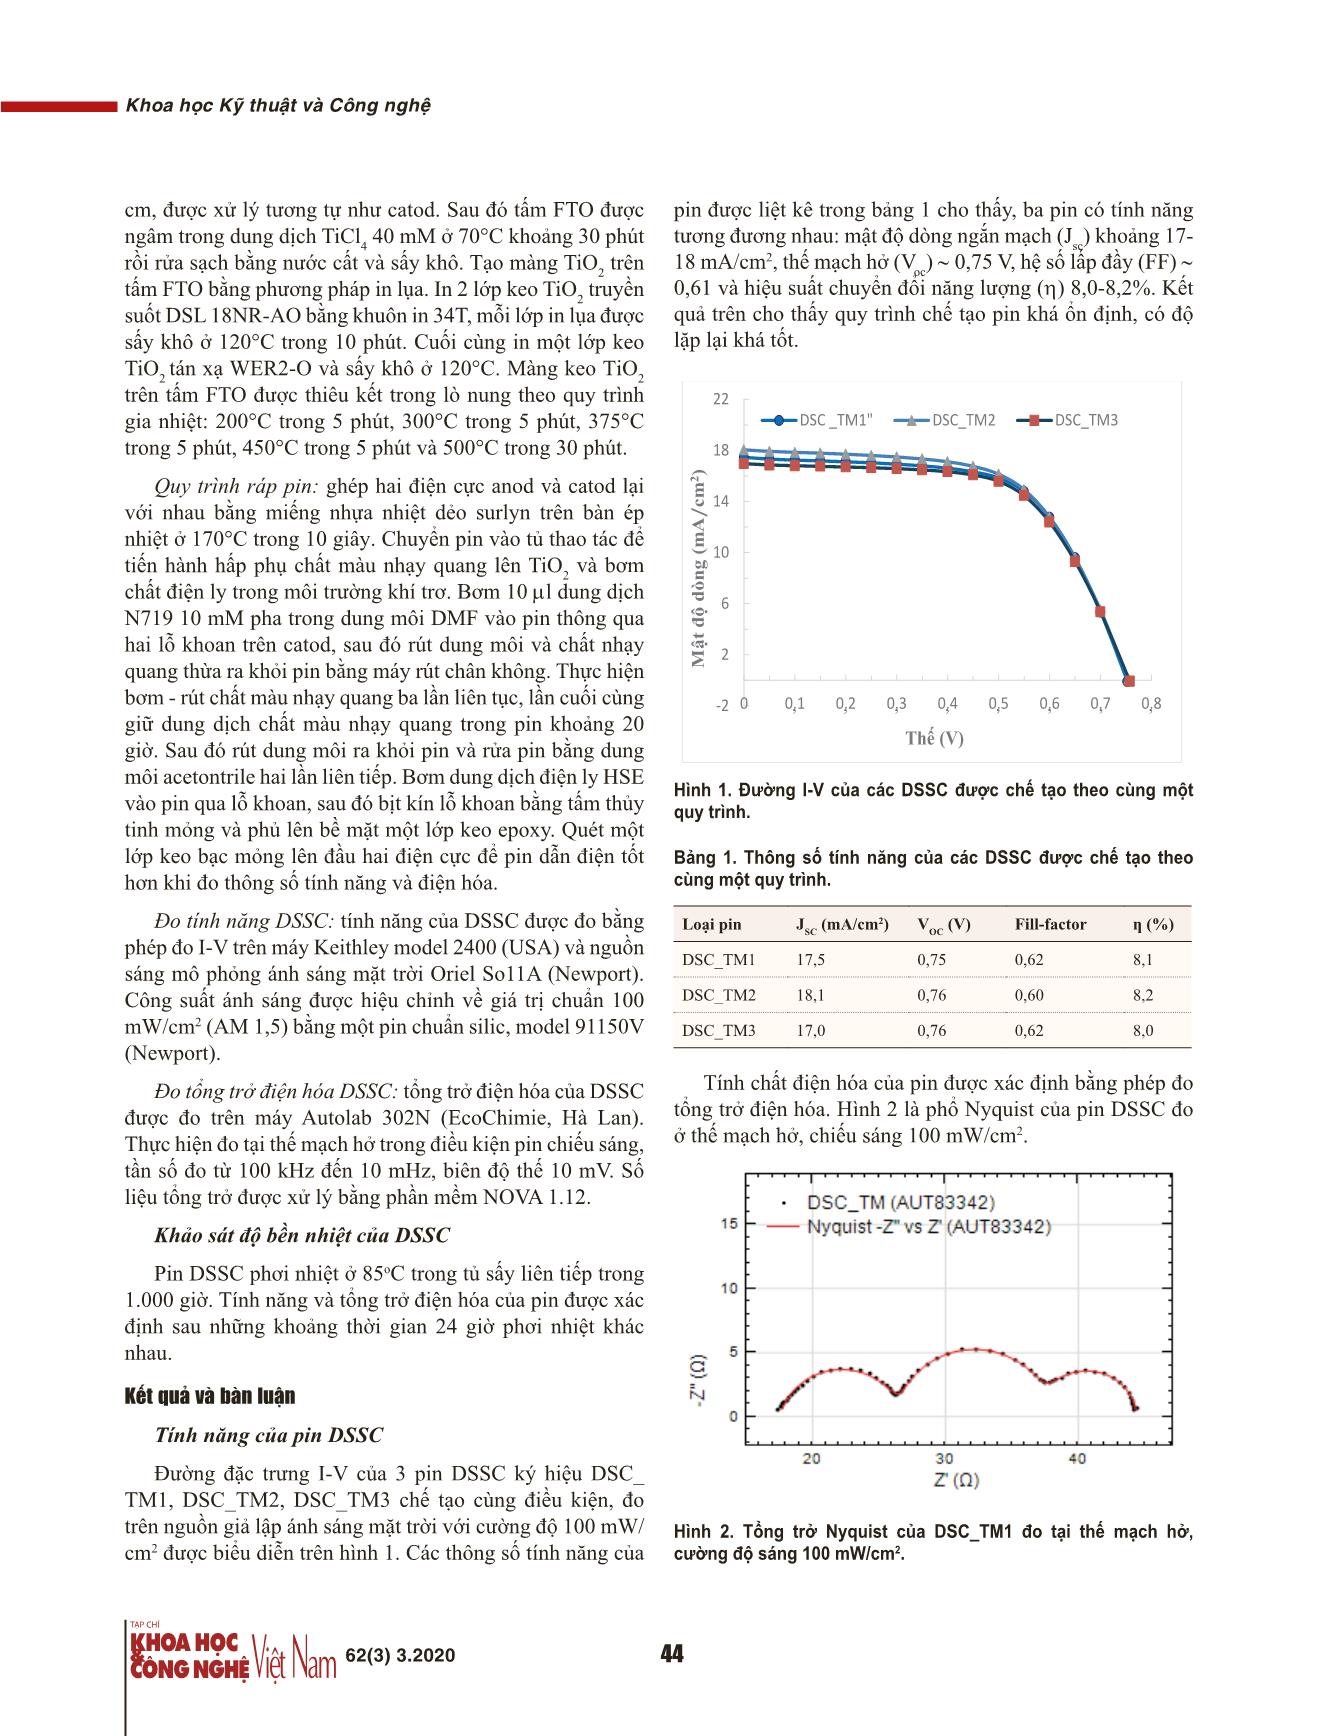 Chế tạo và khảo sát độ bền nhiệt của pin mặt trời chất màu nhạy quang trang 3